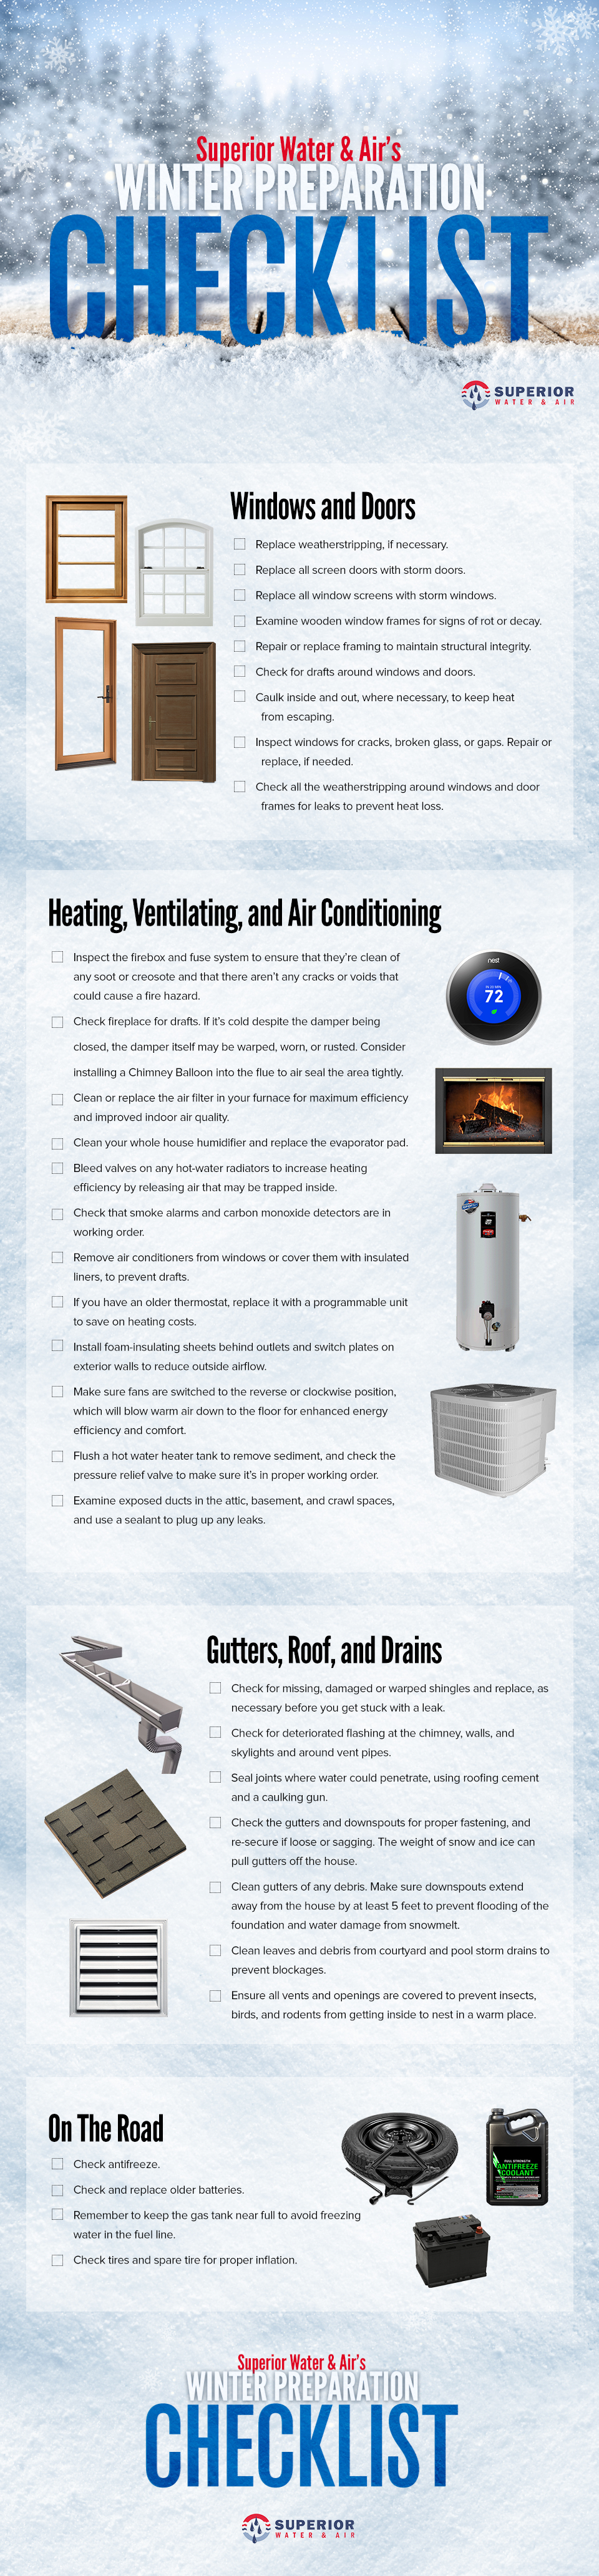 Winter Preparation Checklist